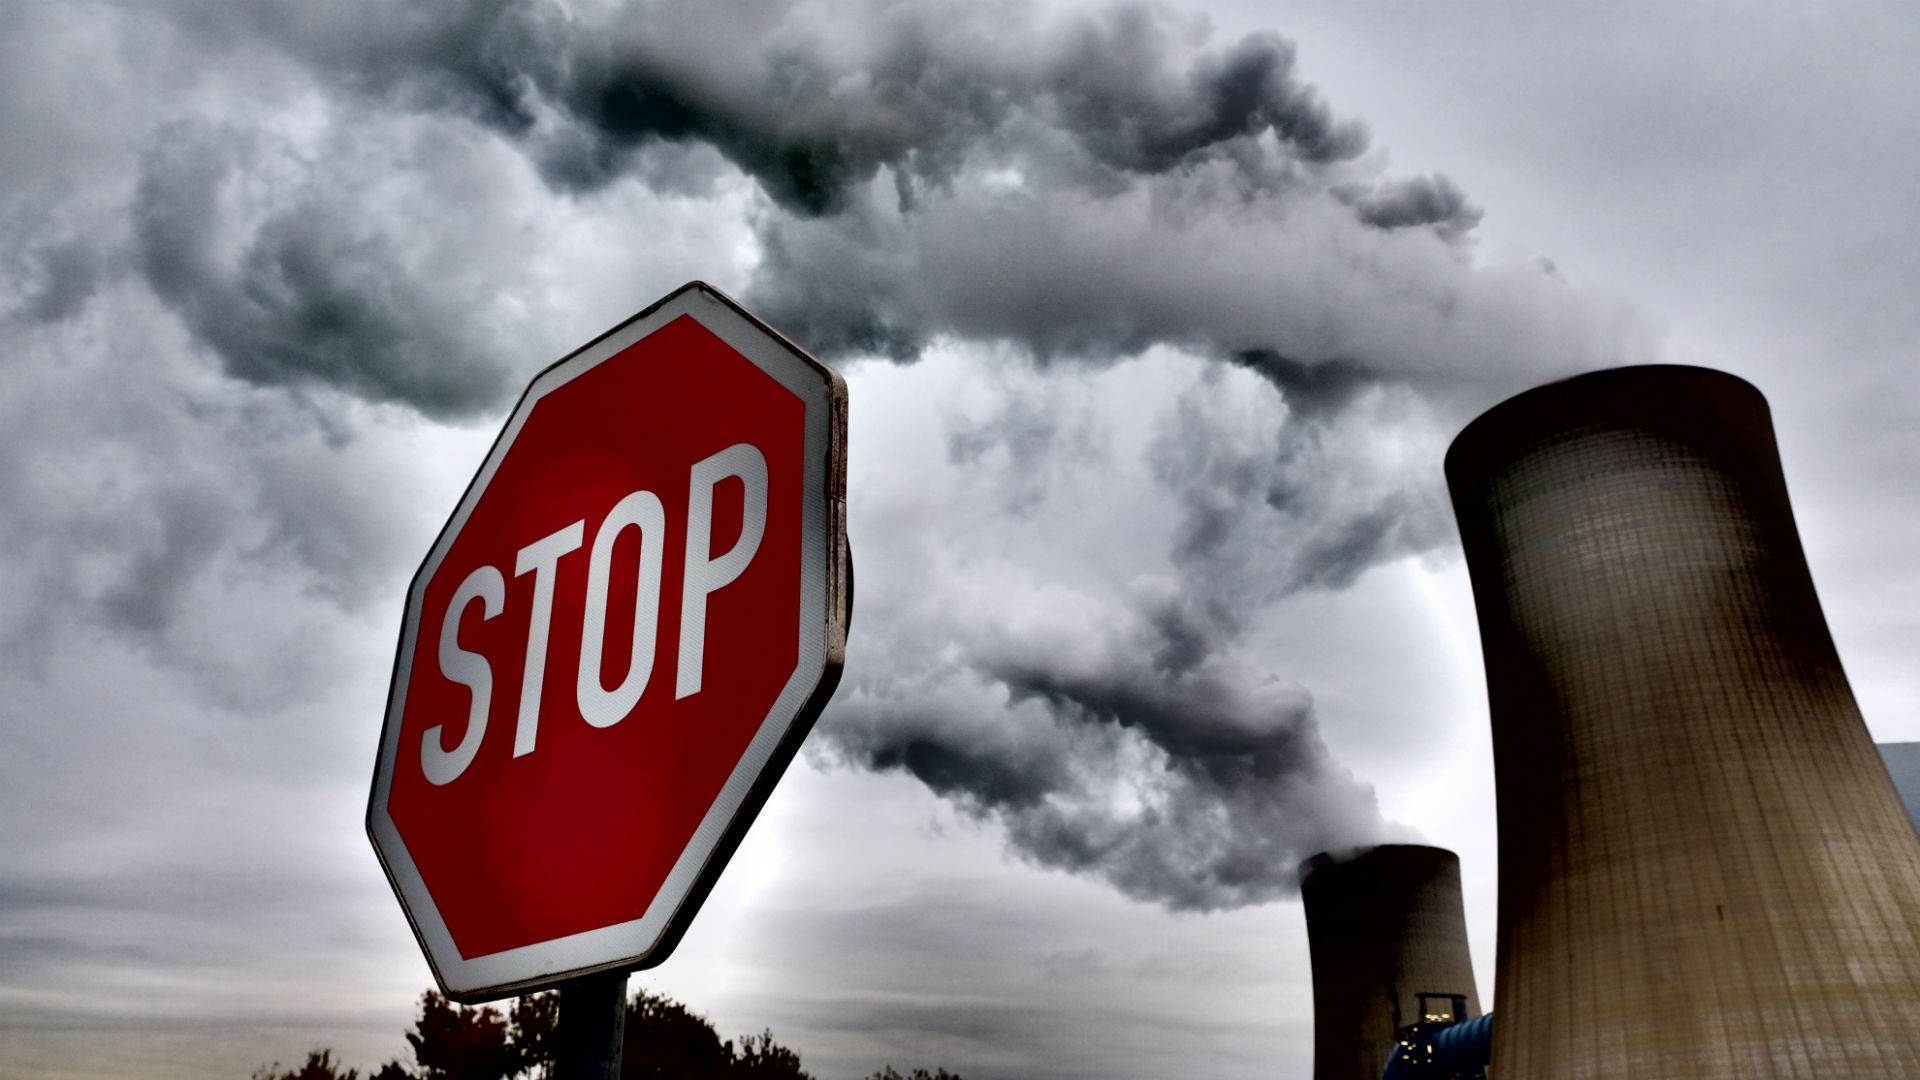 ONU: Guvernele fac progrese insuficiente în ceea ce priveşte reducerea emisiilor de gaze cu efect de seră